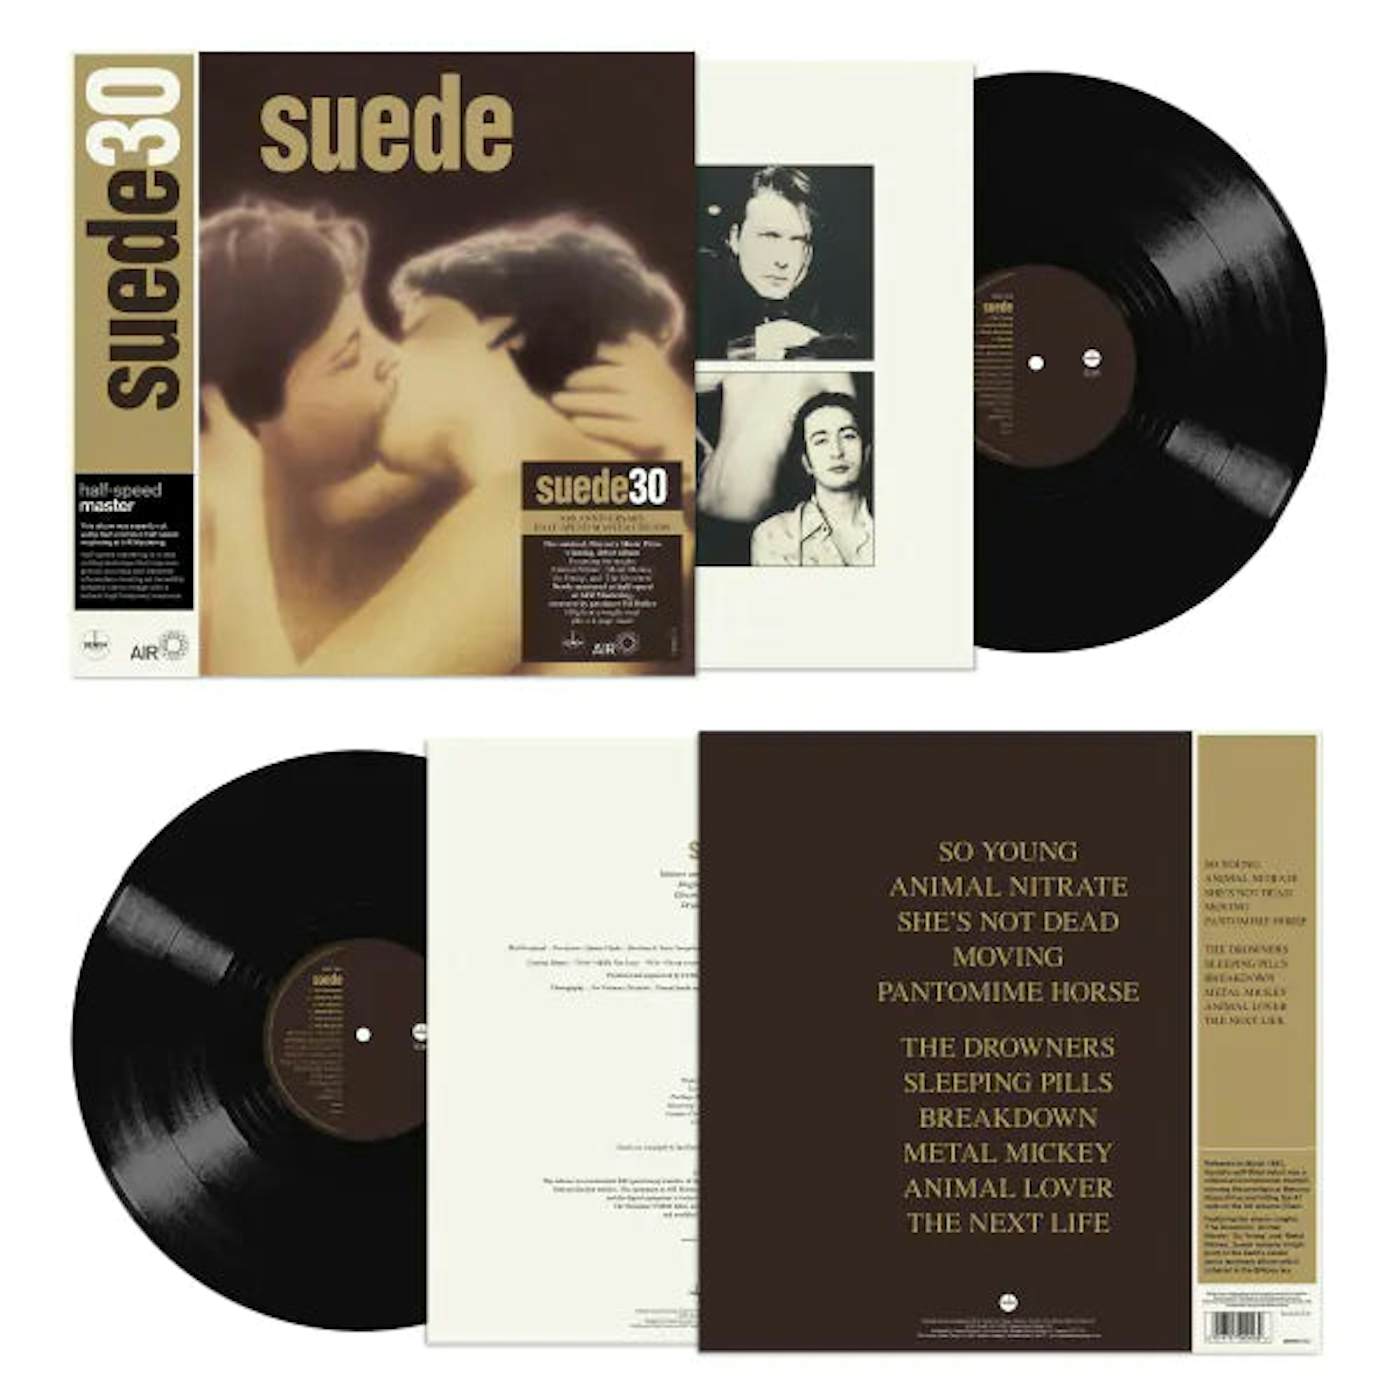 Suede - Suede 30th